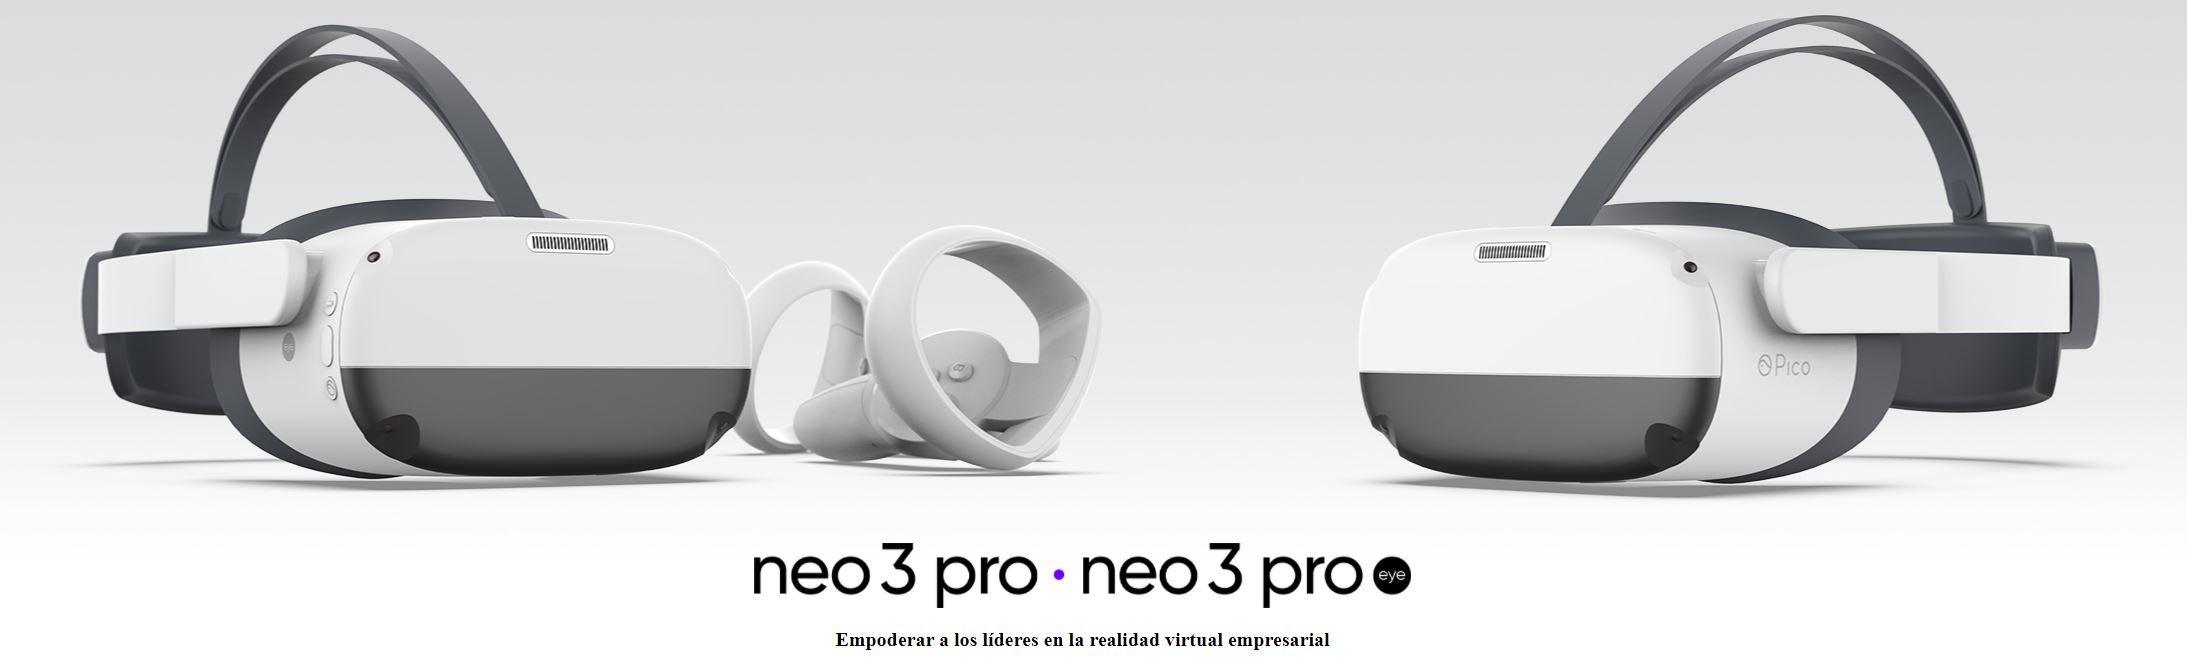 Neo 3 Pro y Neo 3 Pro Eye, las últimas gafas de Pico ya están aquí